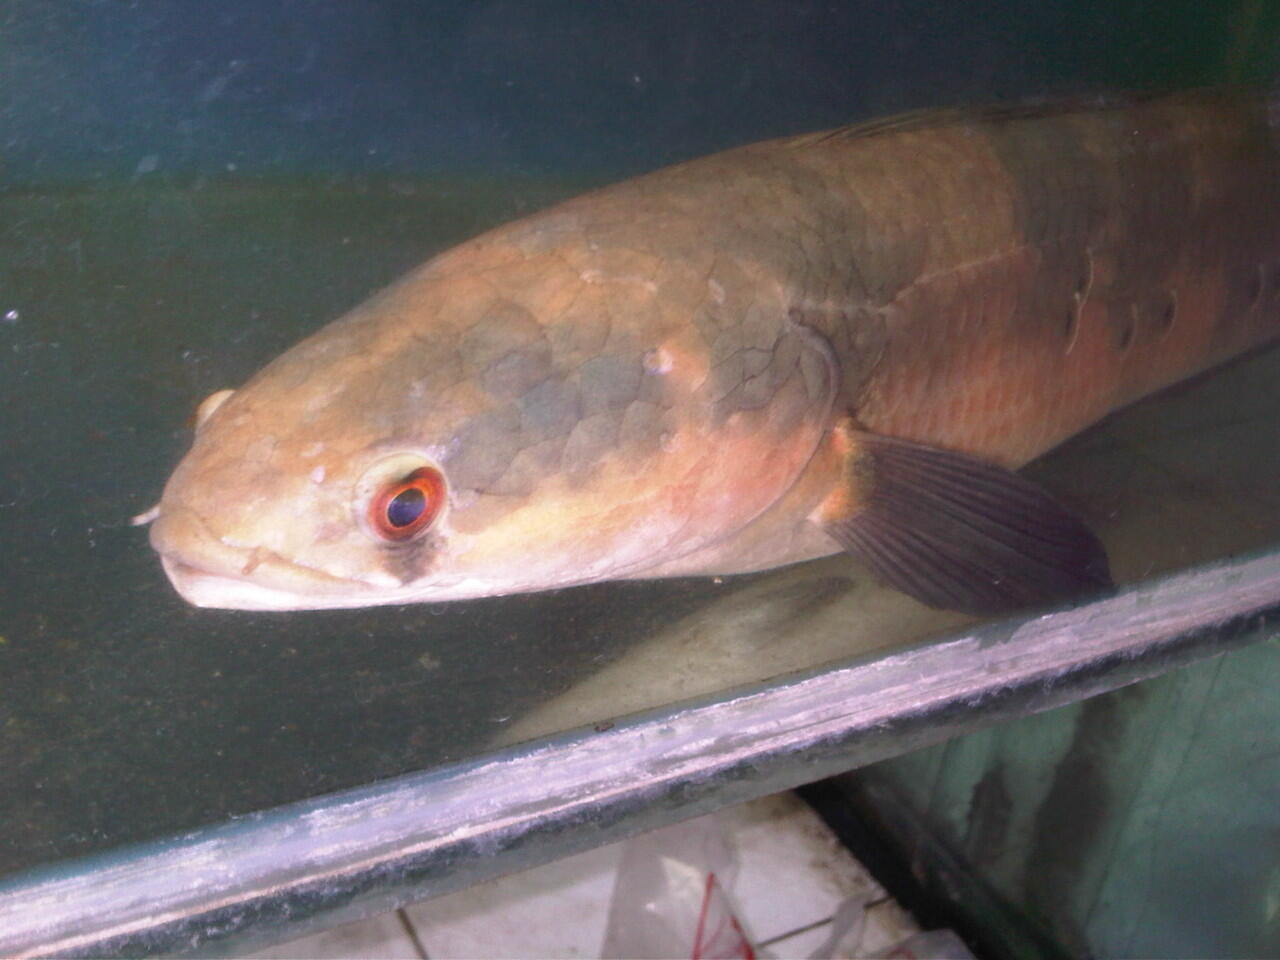 Jenis Ikan Channa Maru – Marulioides